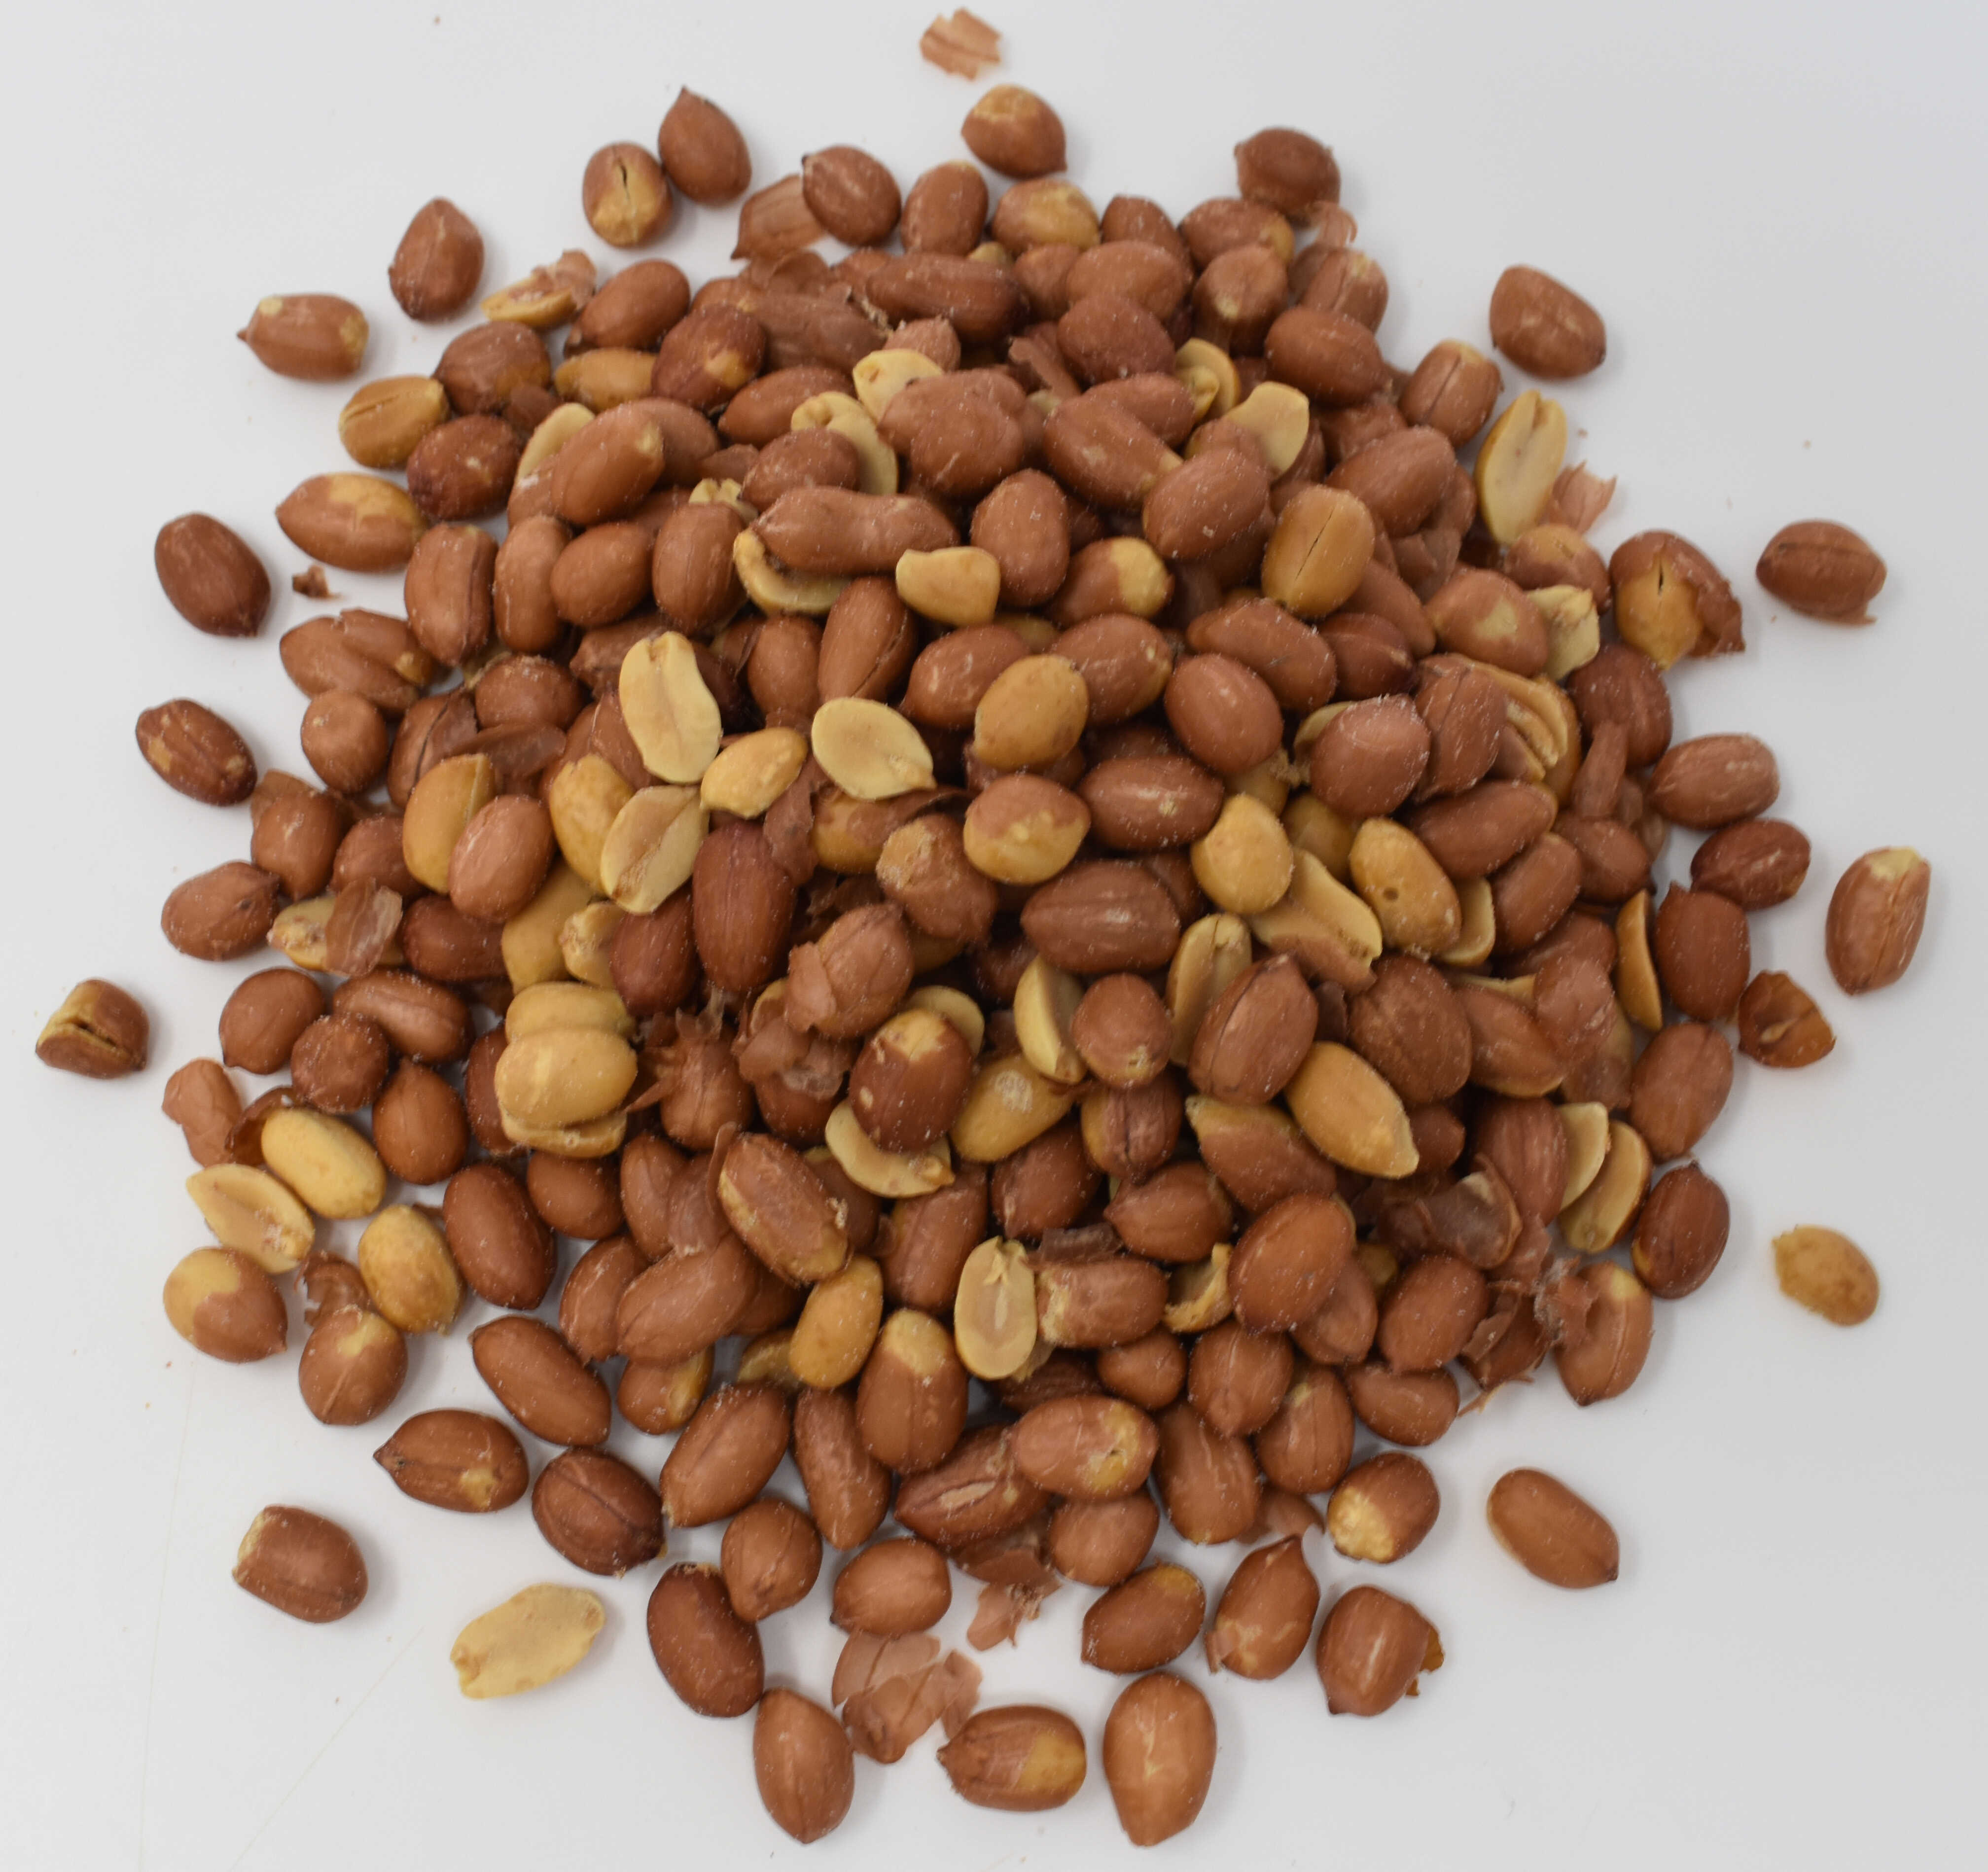 Peanuts, Roasted Spanish, Salted - Top Photo